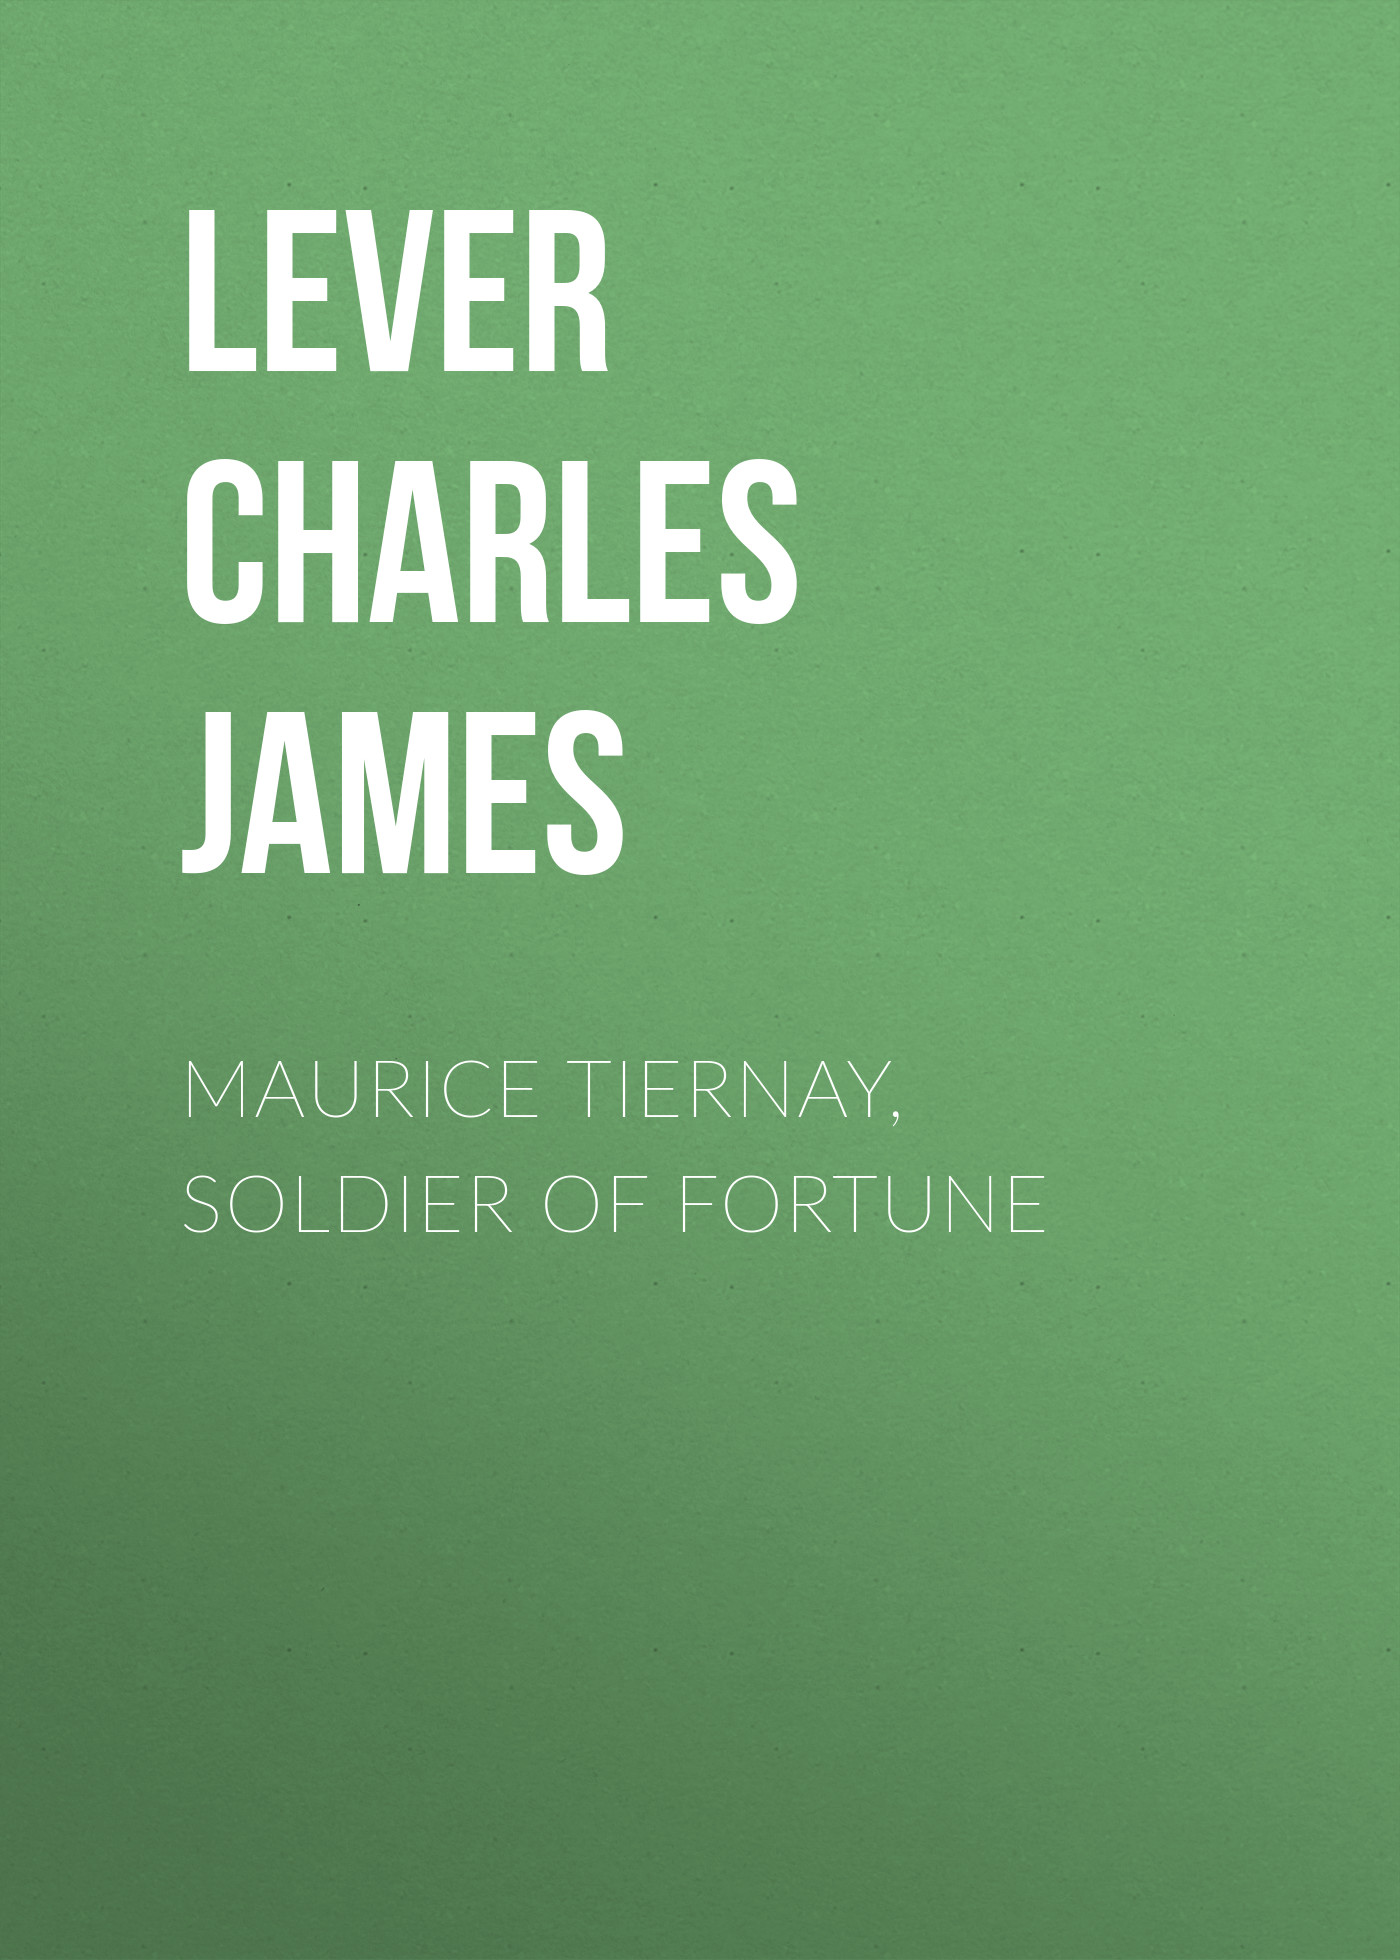 Книга Maurice Tiernay, Soldier of Fortune из серии , созданная Charles Lever, может относится к жанру Литература 19 века, Зарубежная старинная литература, Зарубежная классика. Стоимость электронной книги Maurice Tiernay, Soldier of Fortune с идентификатором 25448628 составляет 0 руб.